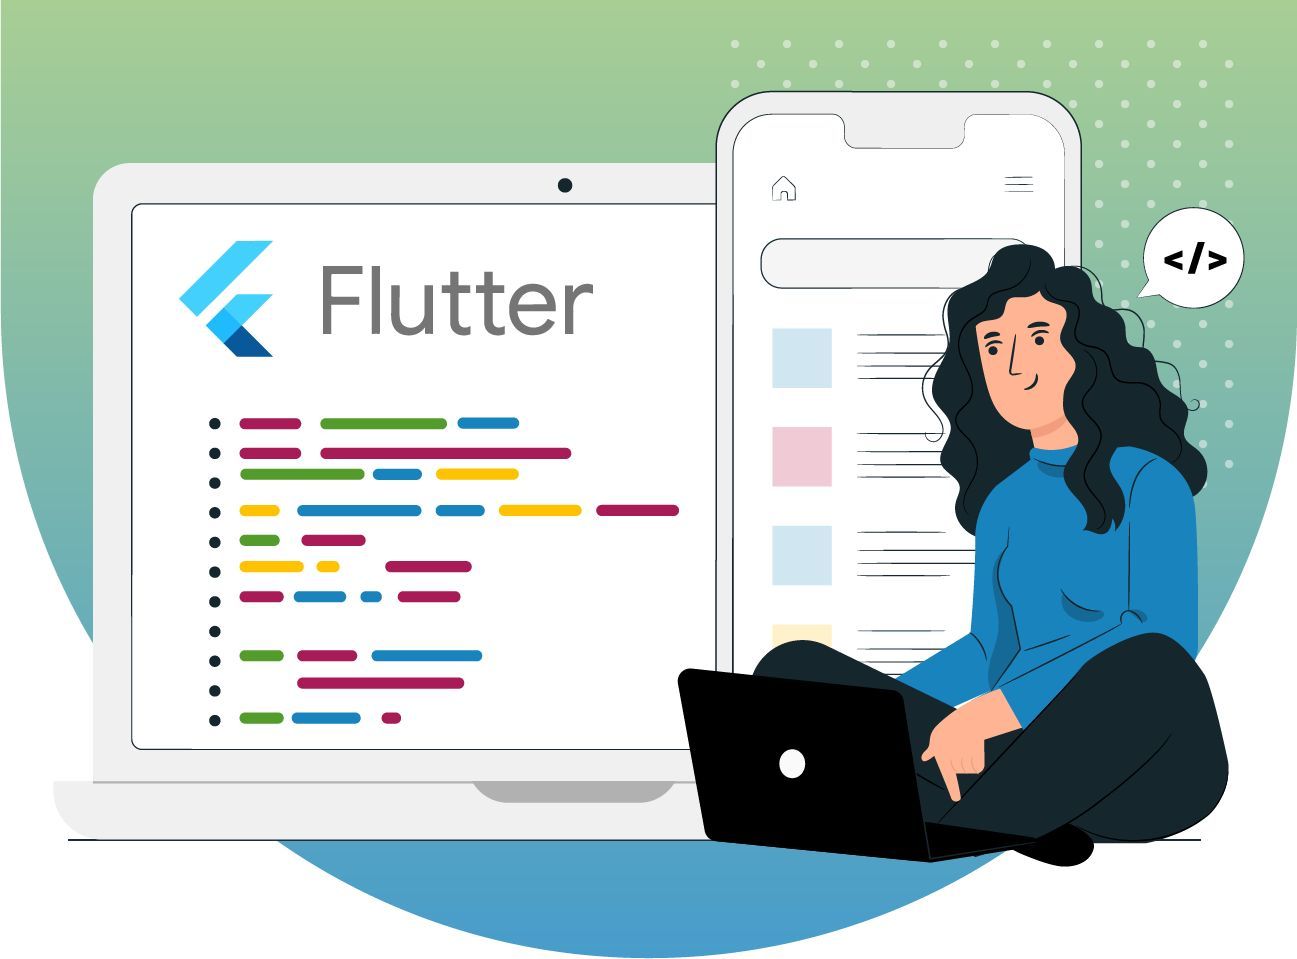 5 steps to hire flutter developers